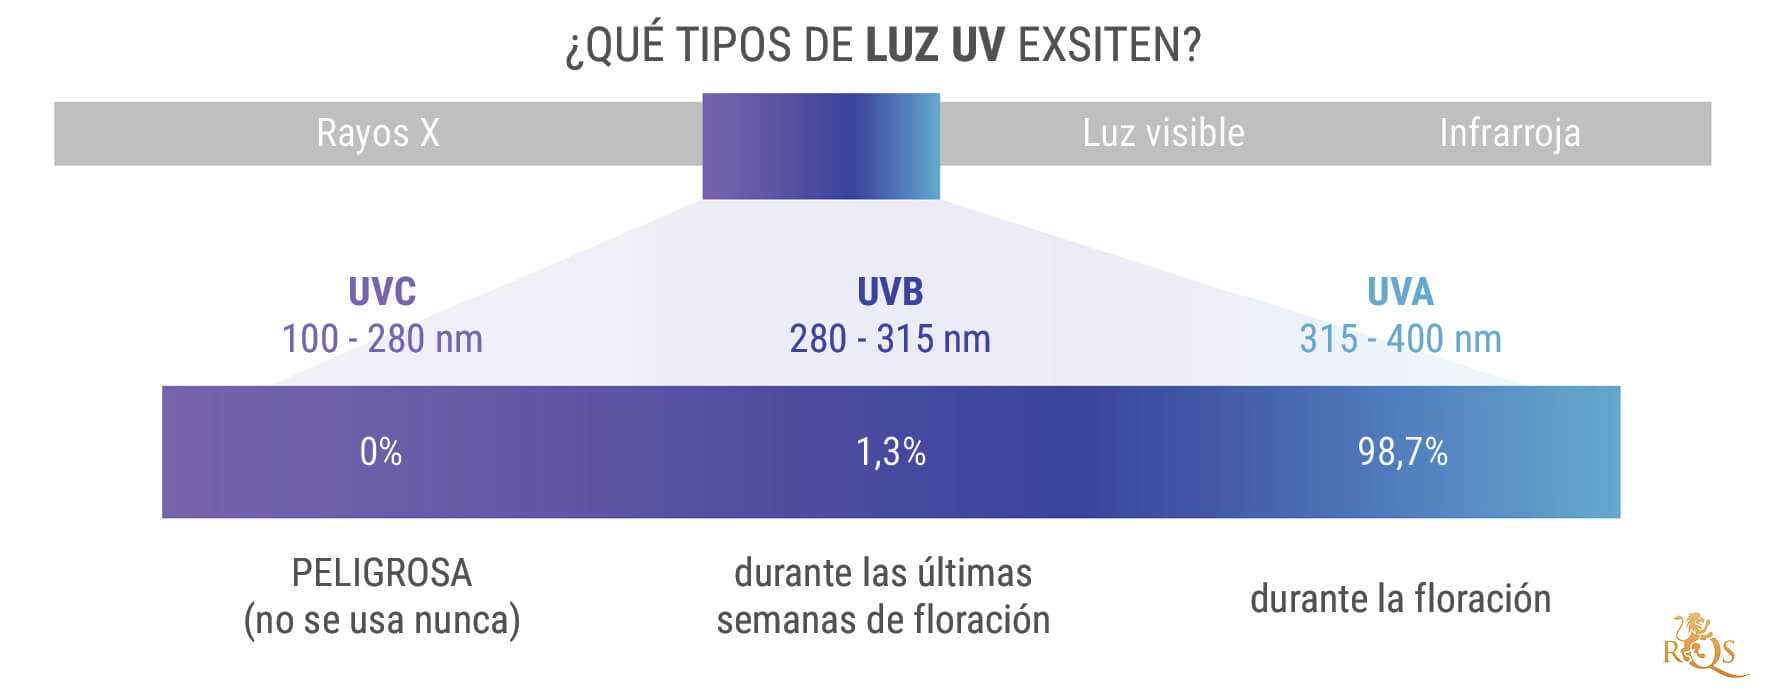 ¿Qué tipos de luz ultravioleta existen?